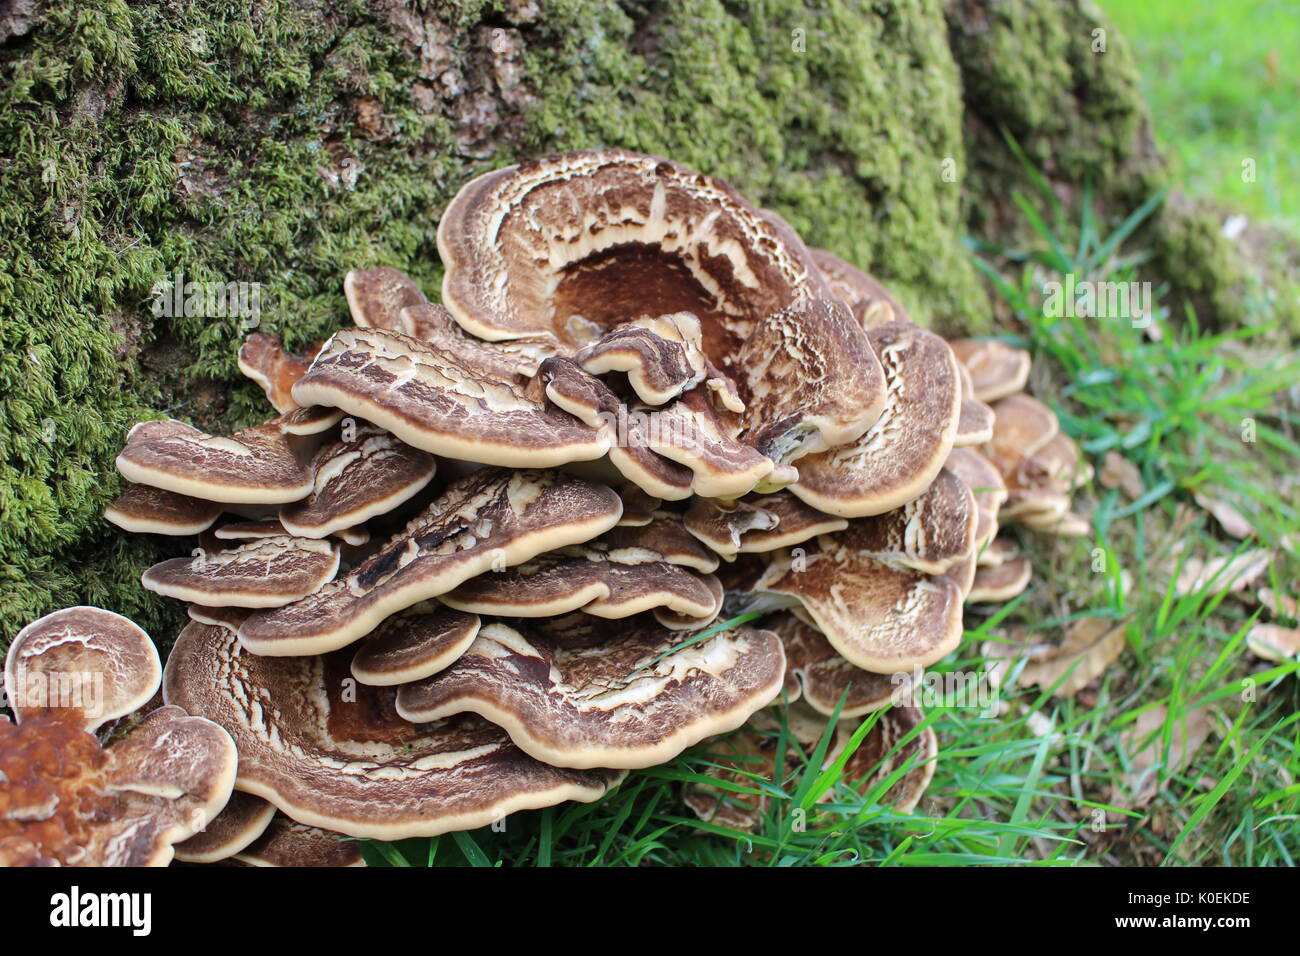 Les champignons à la base de l'arbre, Llanddew, au Pays de Galles Banque D'Images